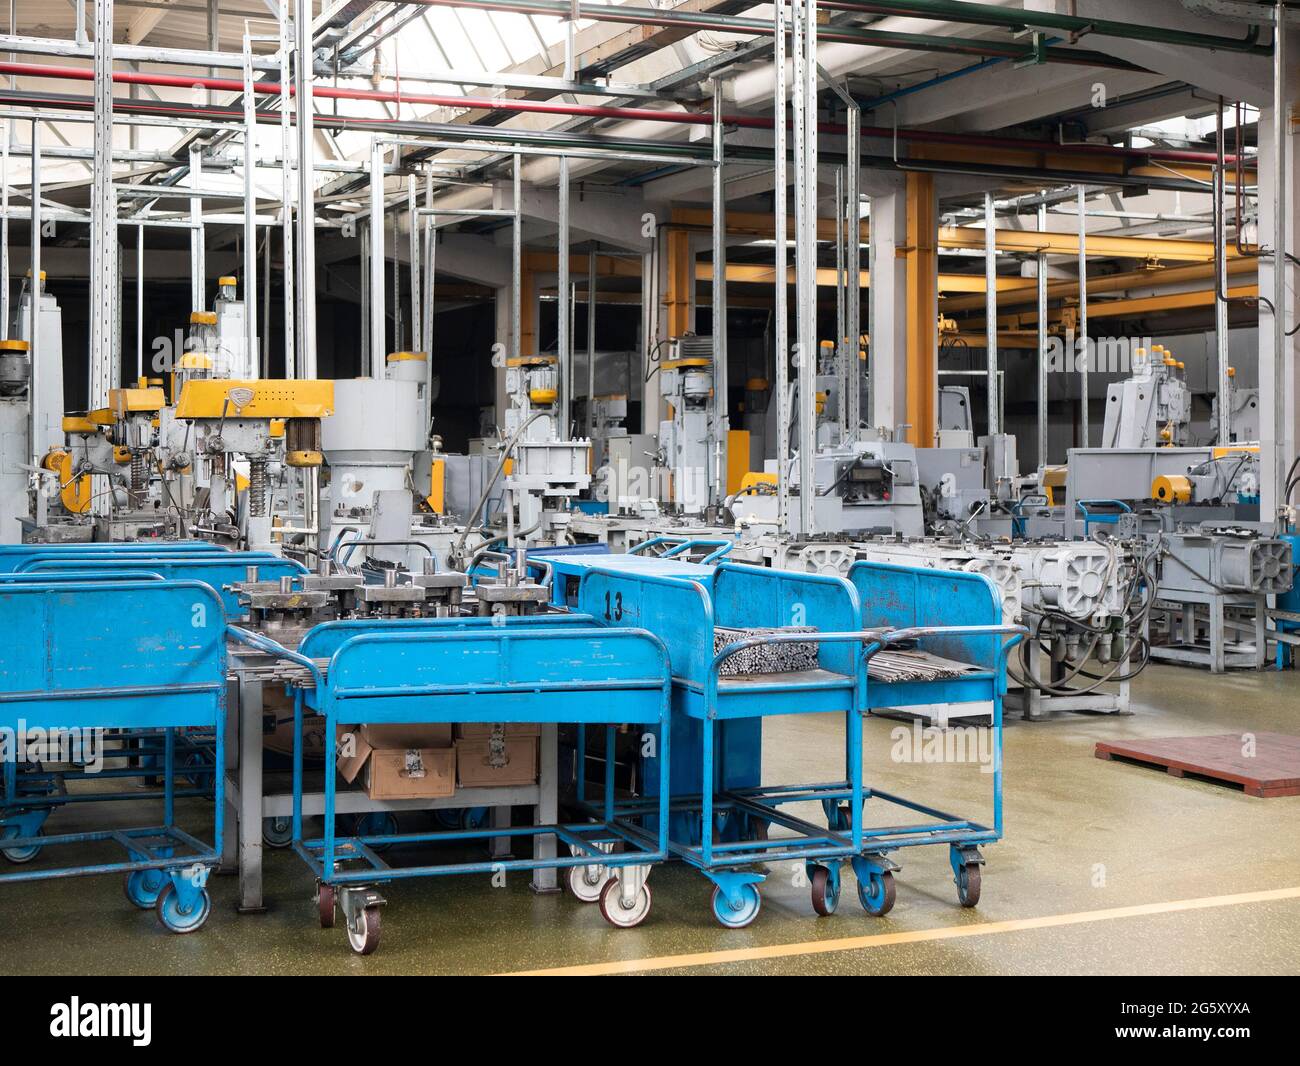 Entorno interior del suelo de la fábrica. Vagones azules con piezas metálicas, unidades industriales en el taller. Taller de fabricación Foto de stock